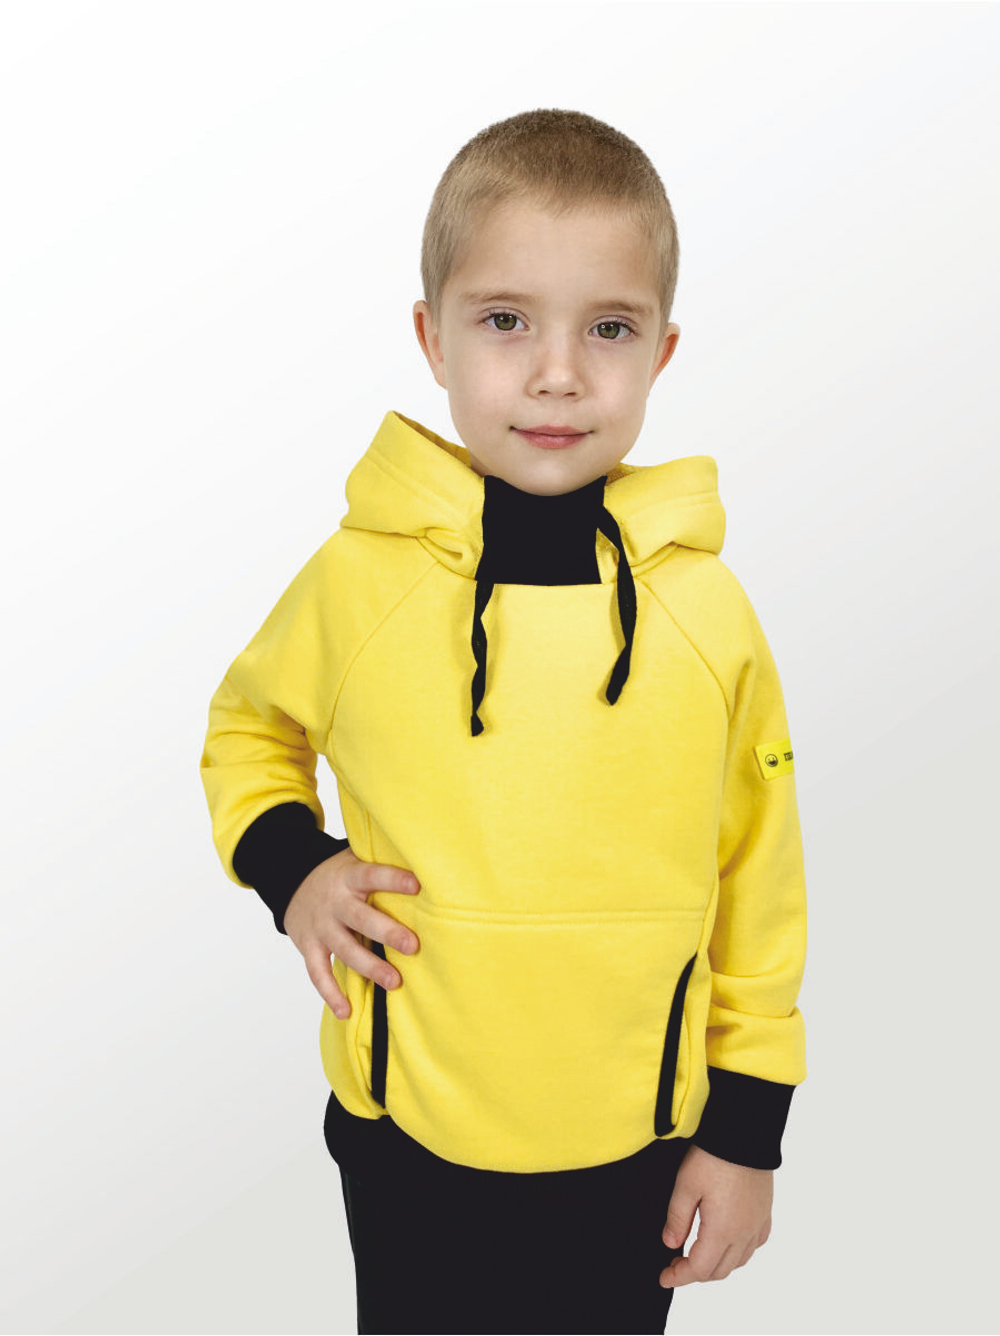 Худи для детей, модель №4, с капюшоном, рост 110 см, желтый